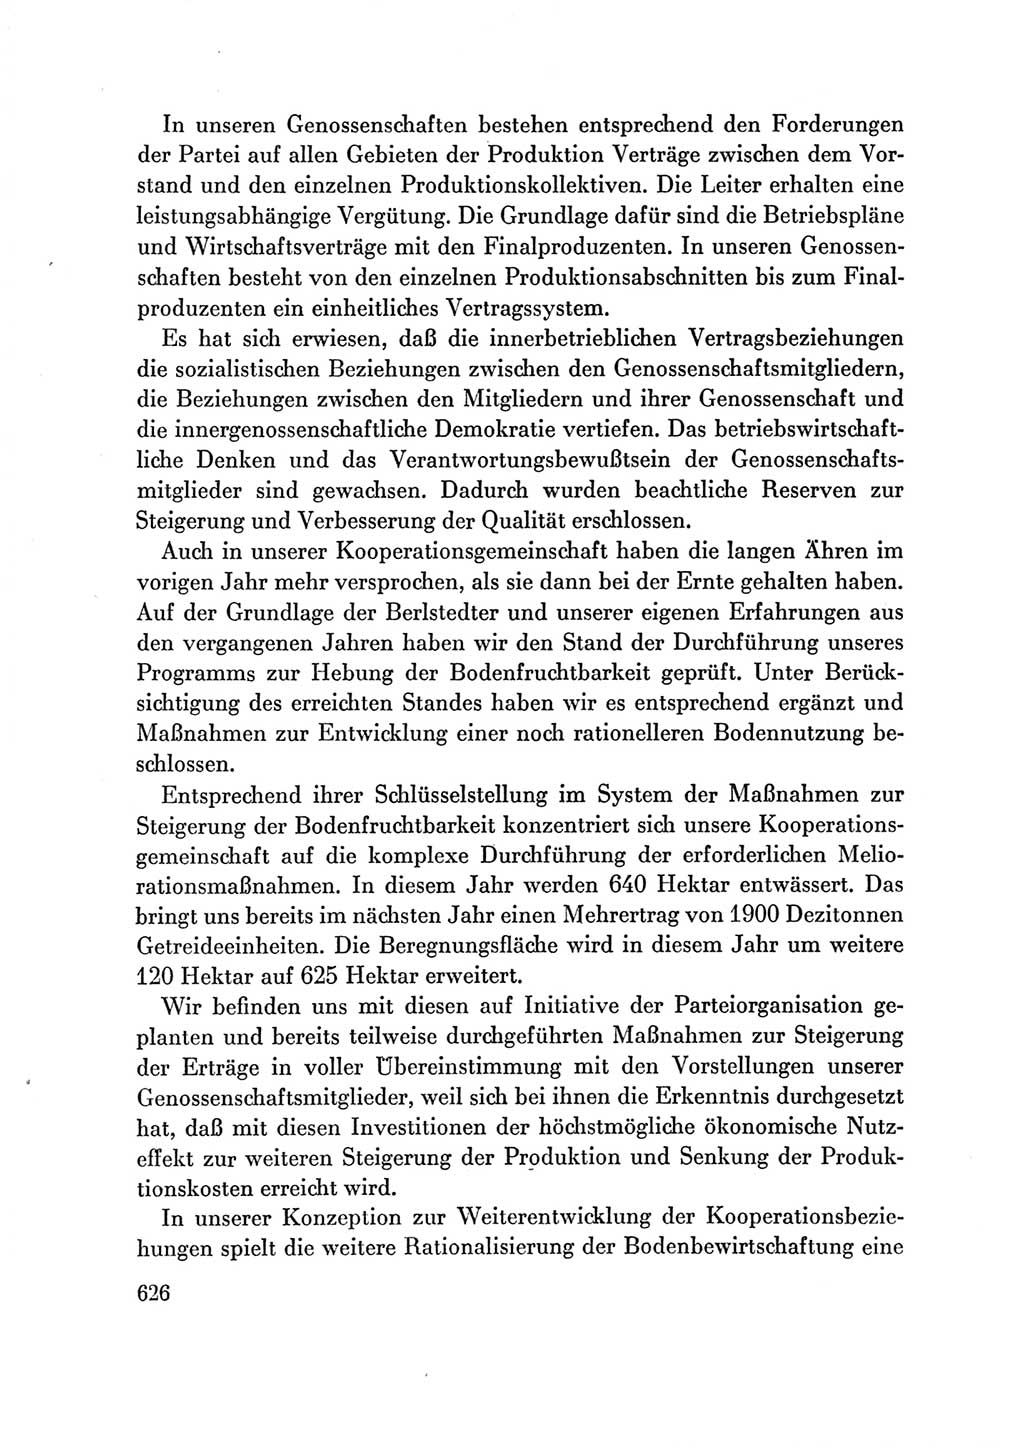 Protokoll der Verhandlungen des Ⅶ. Parteitages der Sozialistischen Einheitspartei Deutschlands (SED) [Deutsche Demokratische Republik (DDR)] 1967, Band Ⅲ, Seite 626 (Prot. Verh. Ⅶ. PT SED DDR 1967, Bd. Ⅲ, S. 626)